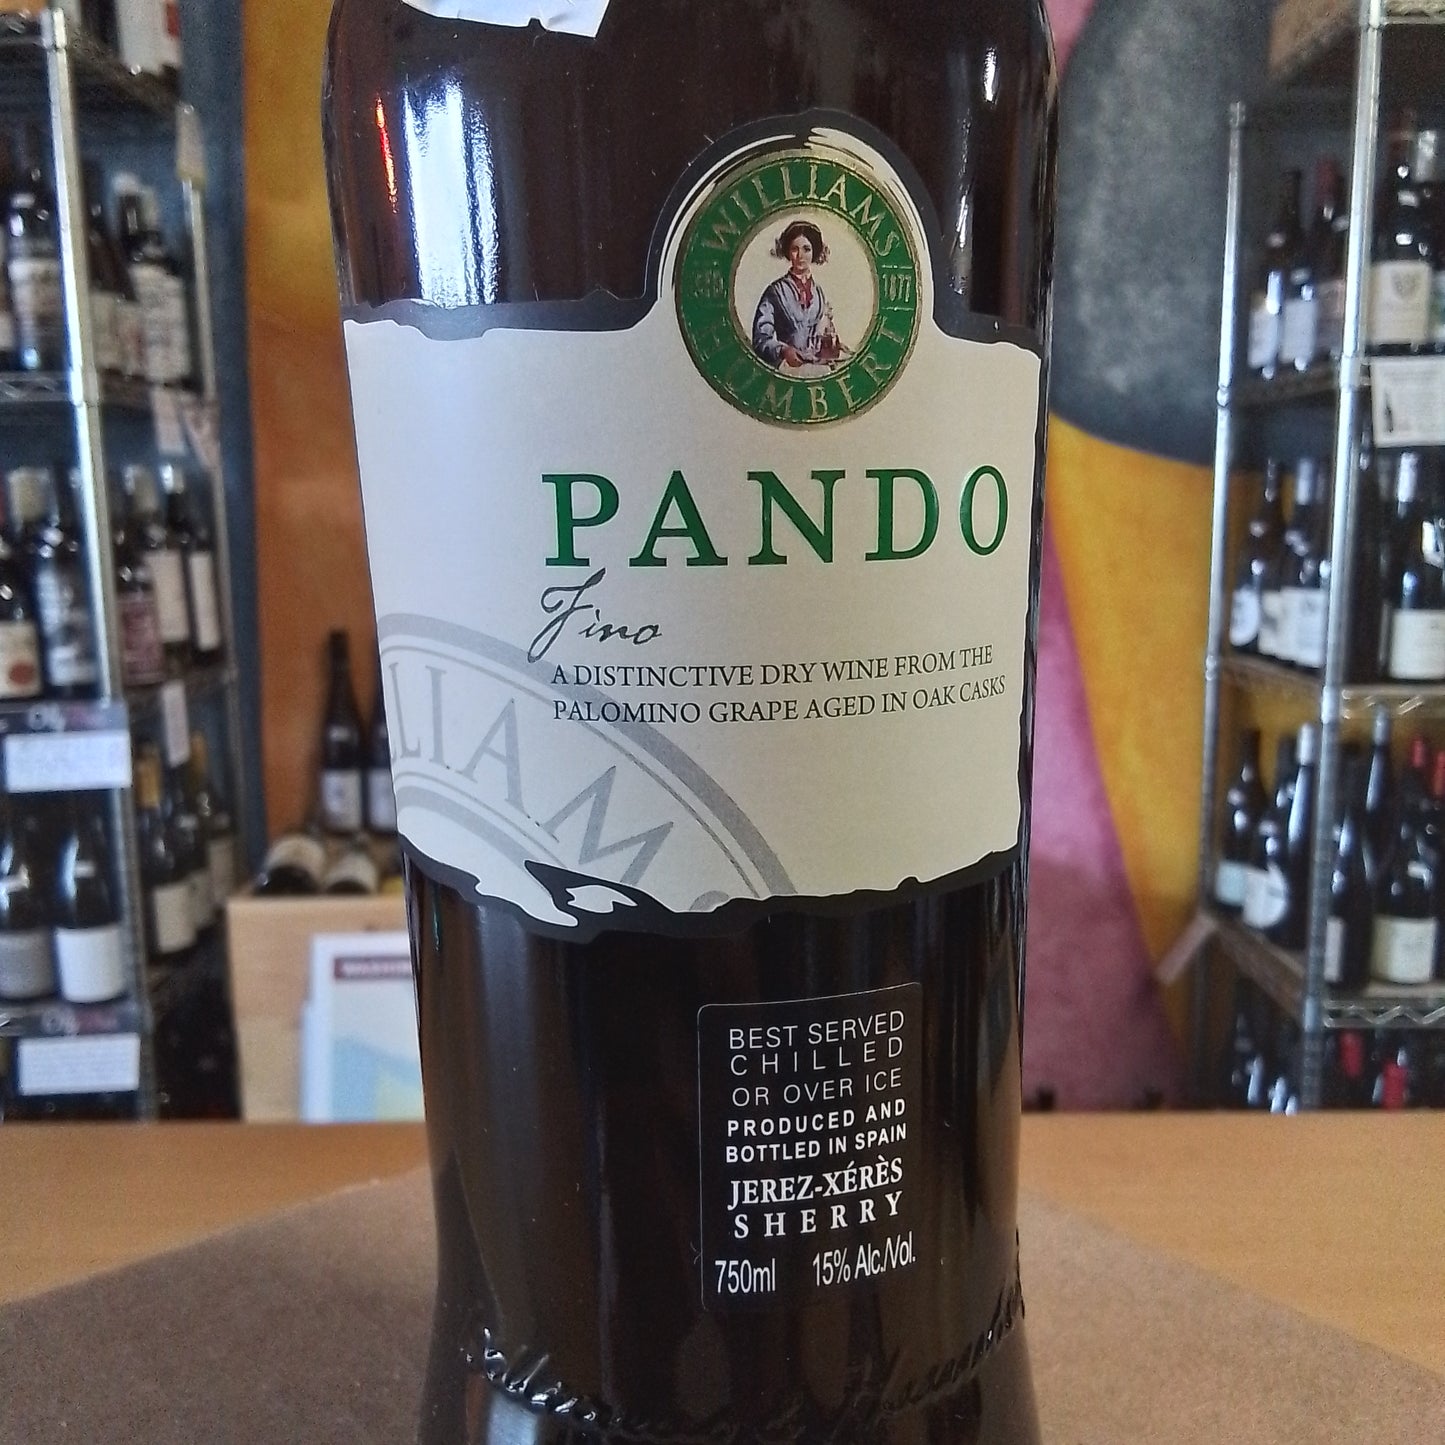 PANDO Fino Sherry (Spain)